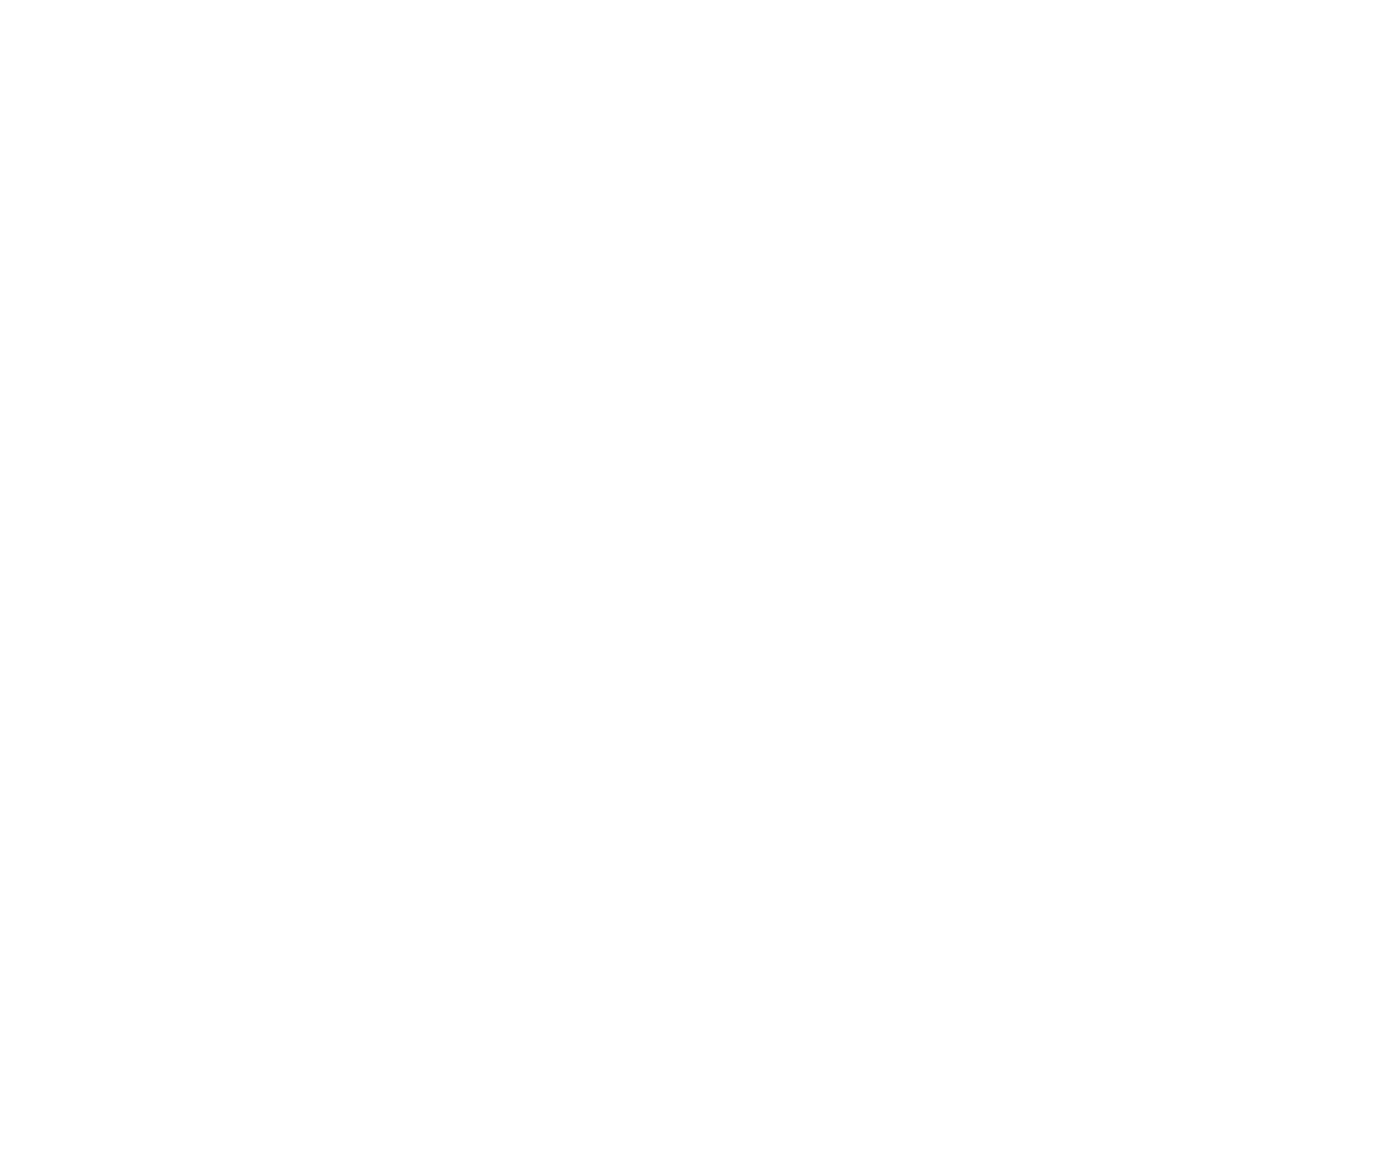 Blog Zeus Store